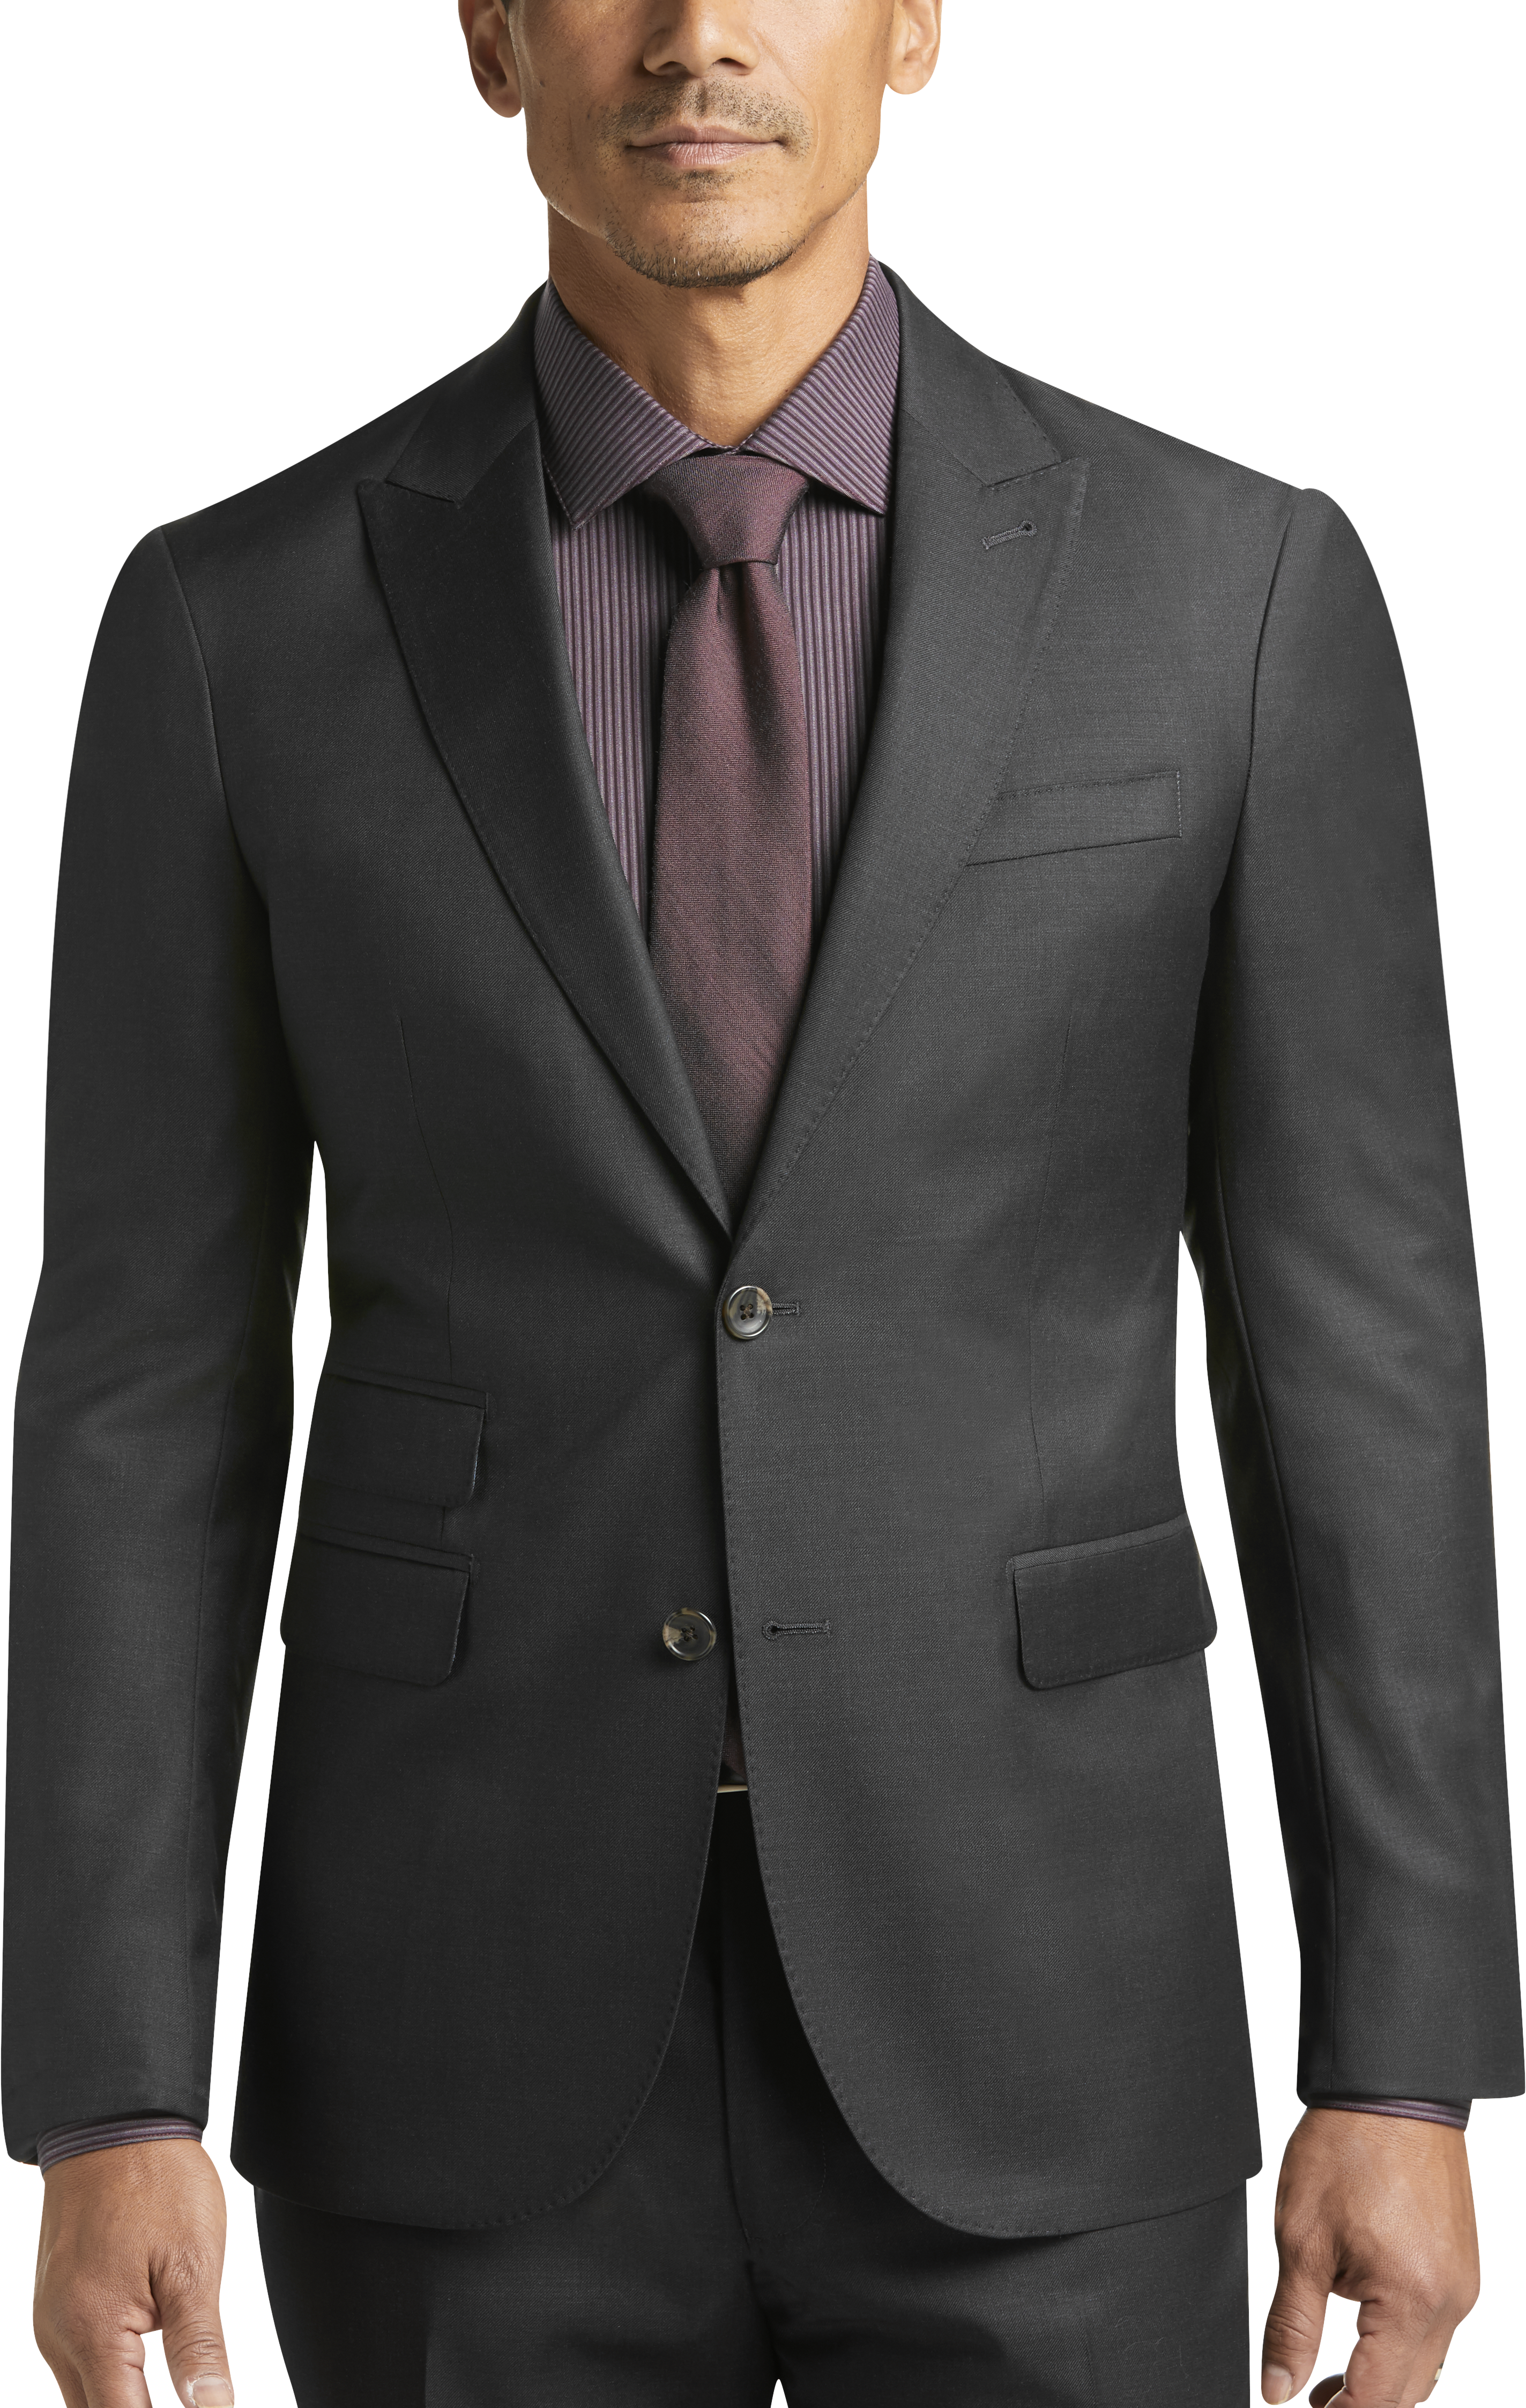 Strong Suit Charcoal Extreme Slim Fit Suit - Men's Suits | Men's Wearhouse